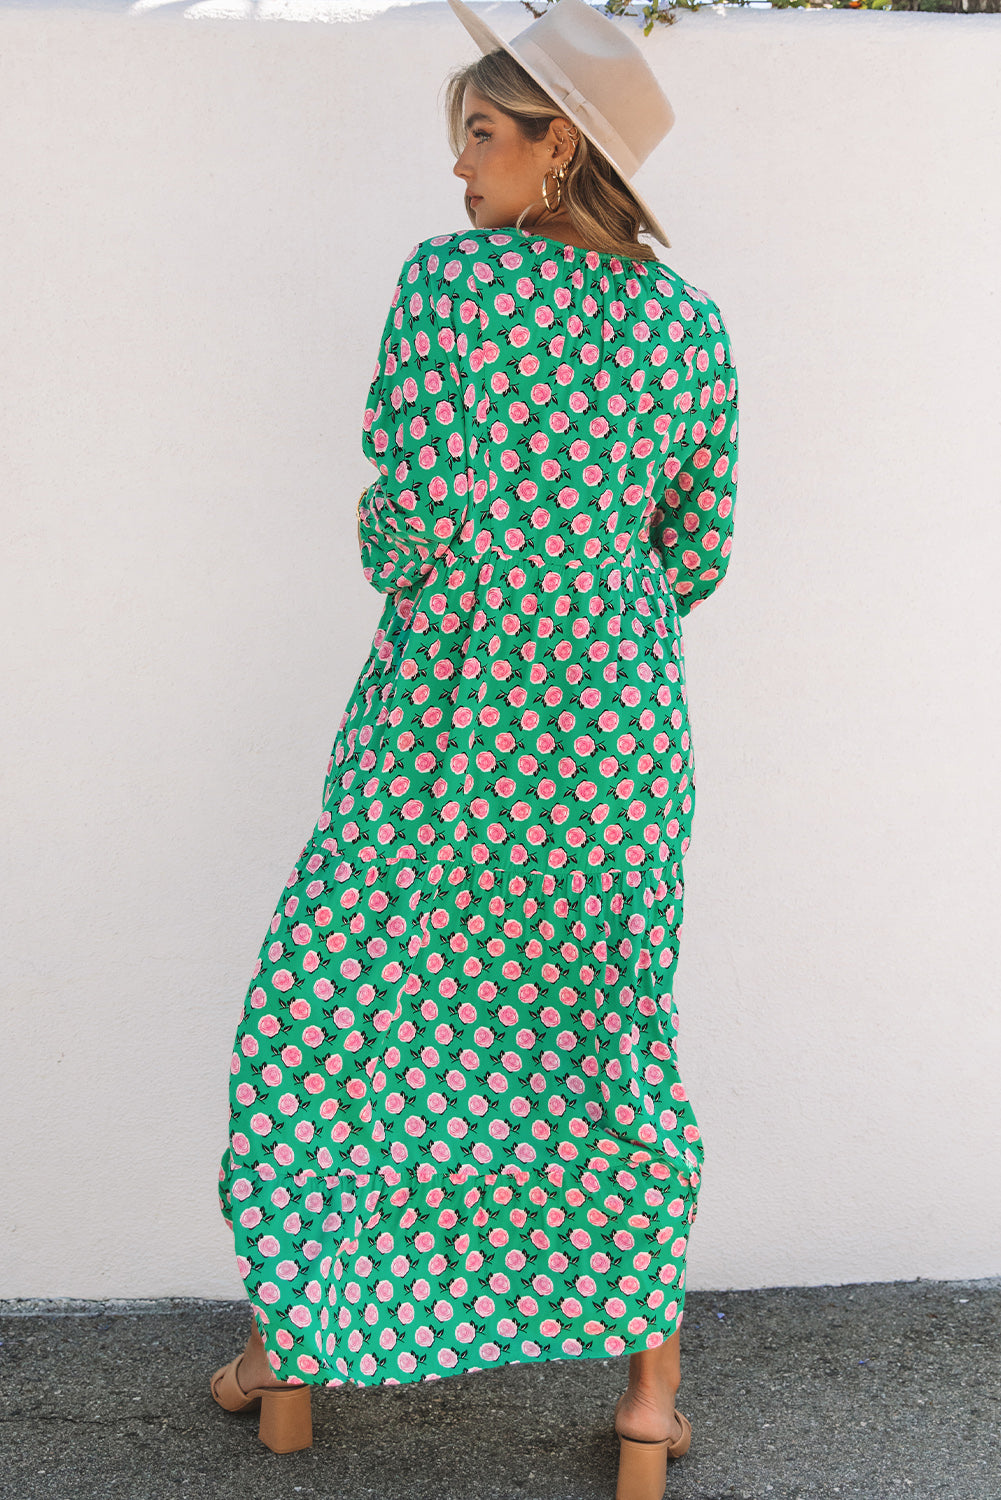 ΑΜΕΣΑ ΔΙΑΘΕΣΙΜΟ: πράσινο φλοράλ μάξι φόρεμα CAROLYNN